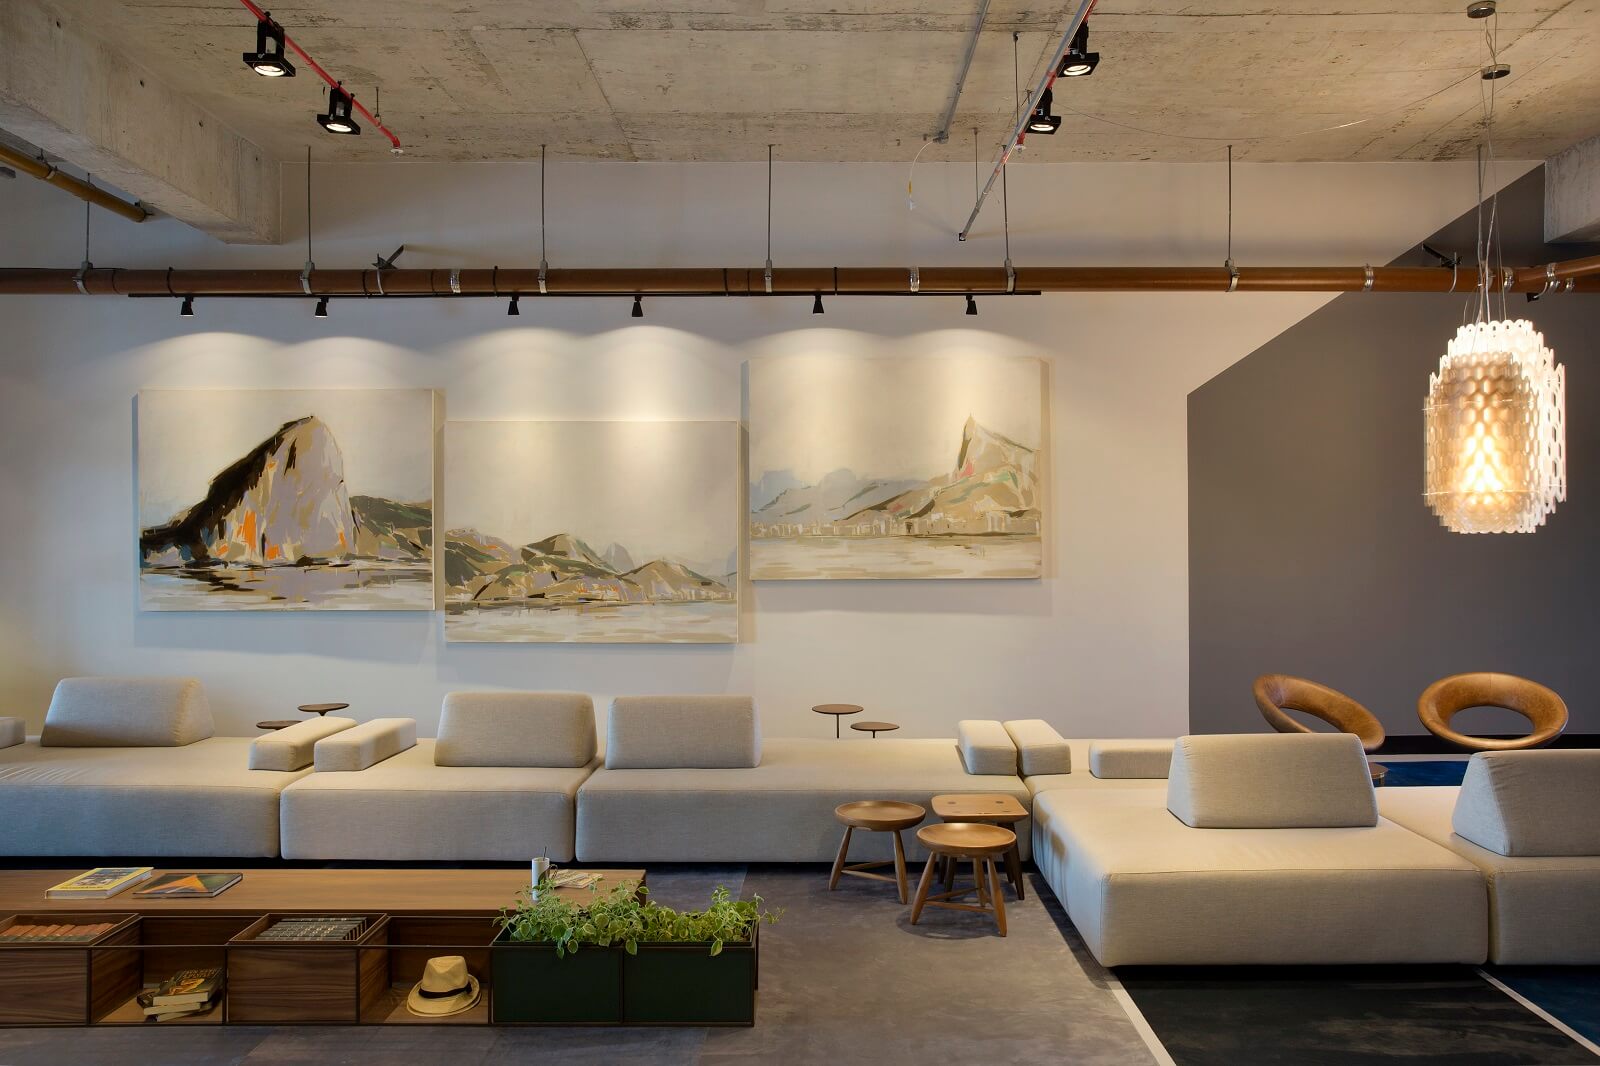 sala branca com gesso utilizando estilo industrial com sofás brancos, luminária e um quadro com uma paisagem de montanha dividida em 3 quadros que se complementam.